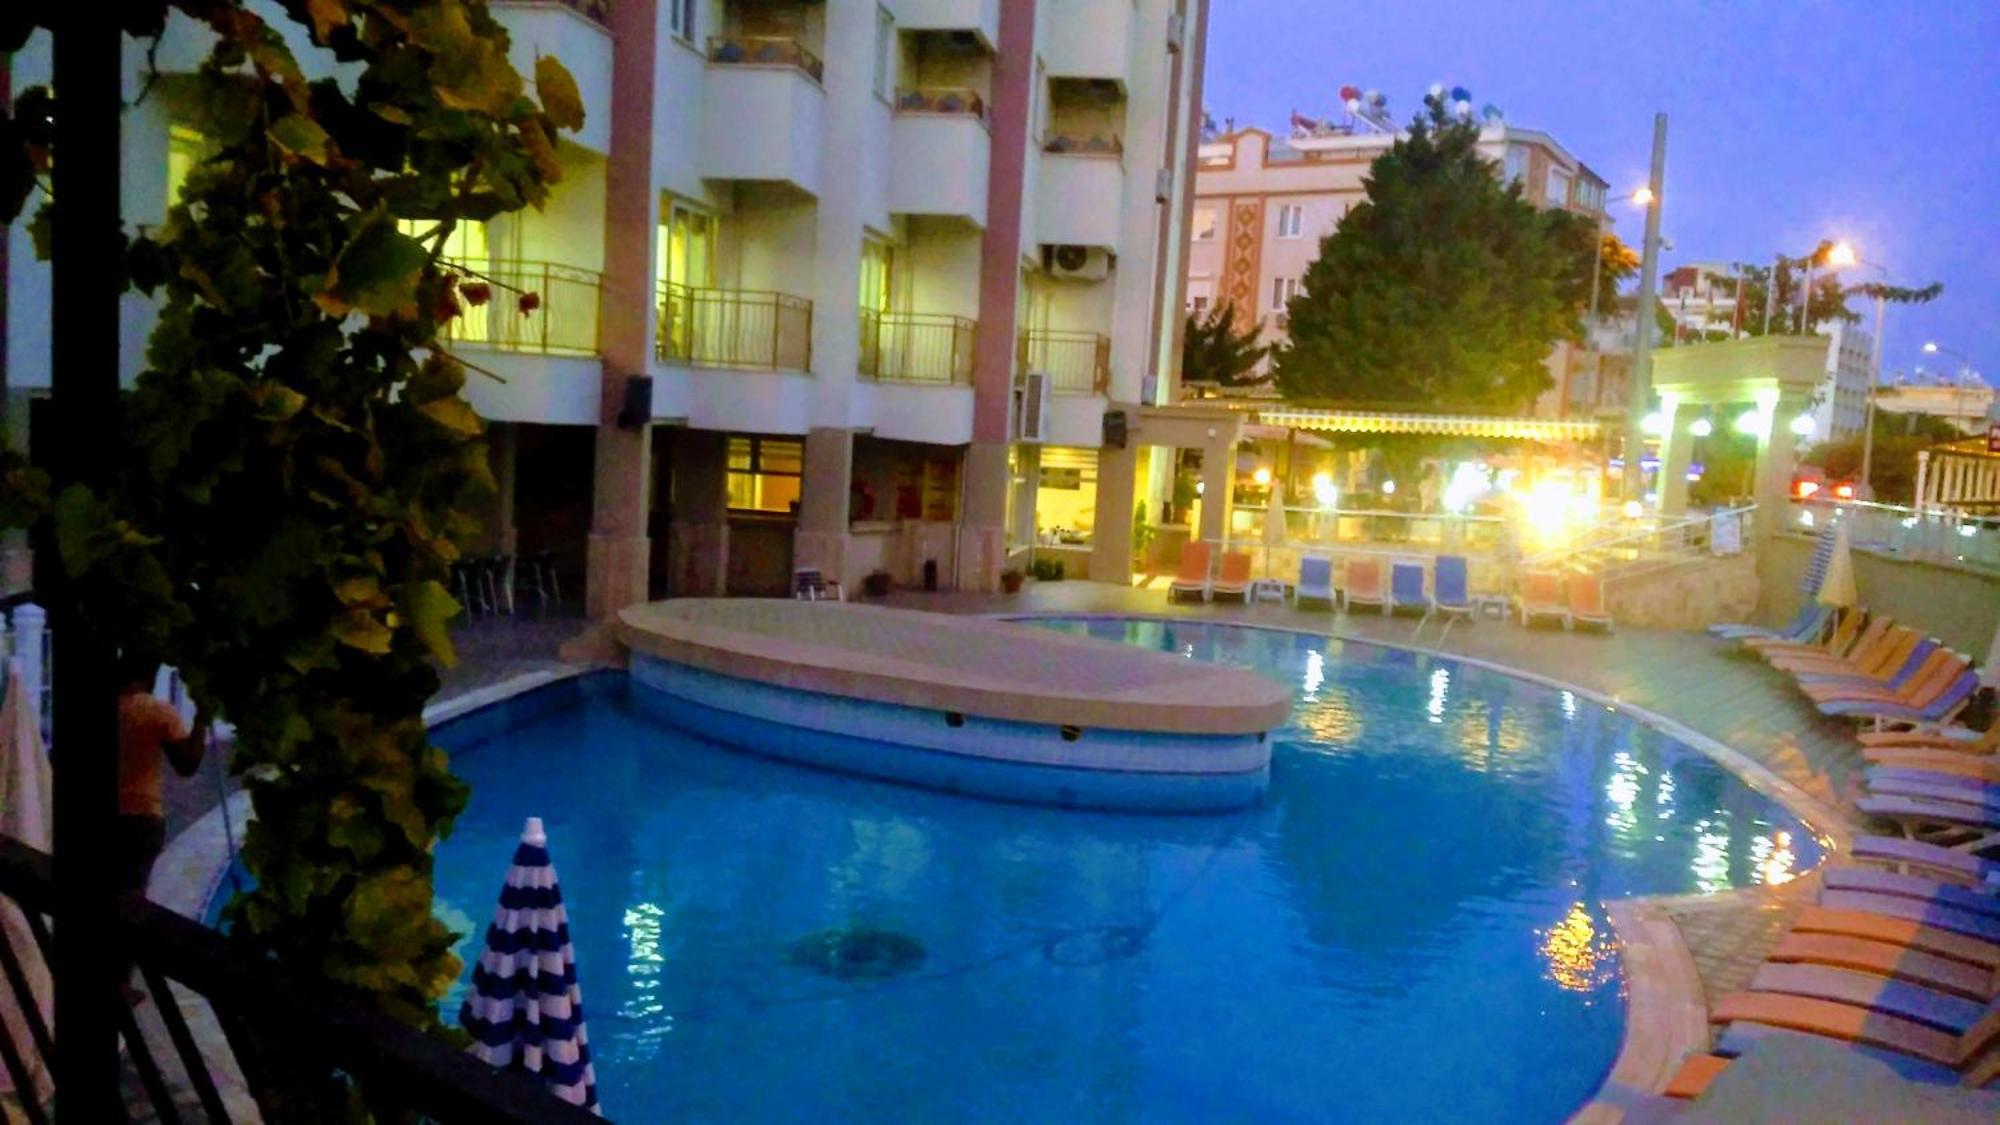 Meryemana Hotel Didim Exterior photo